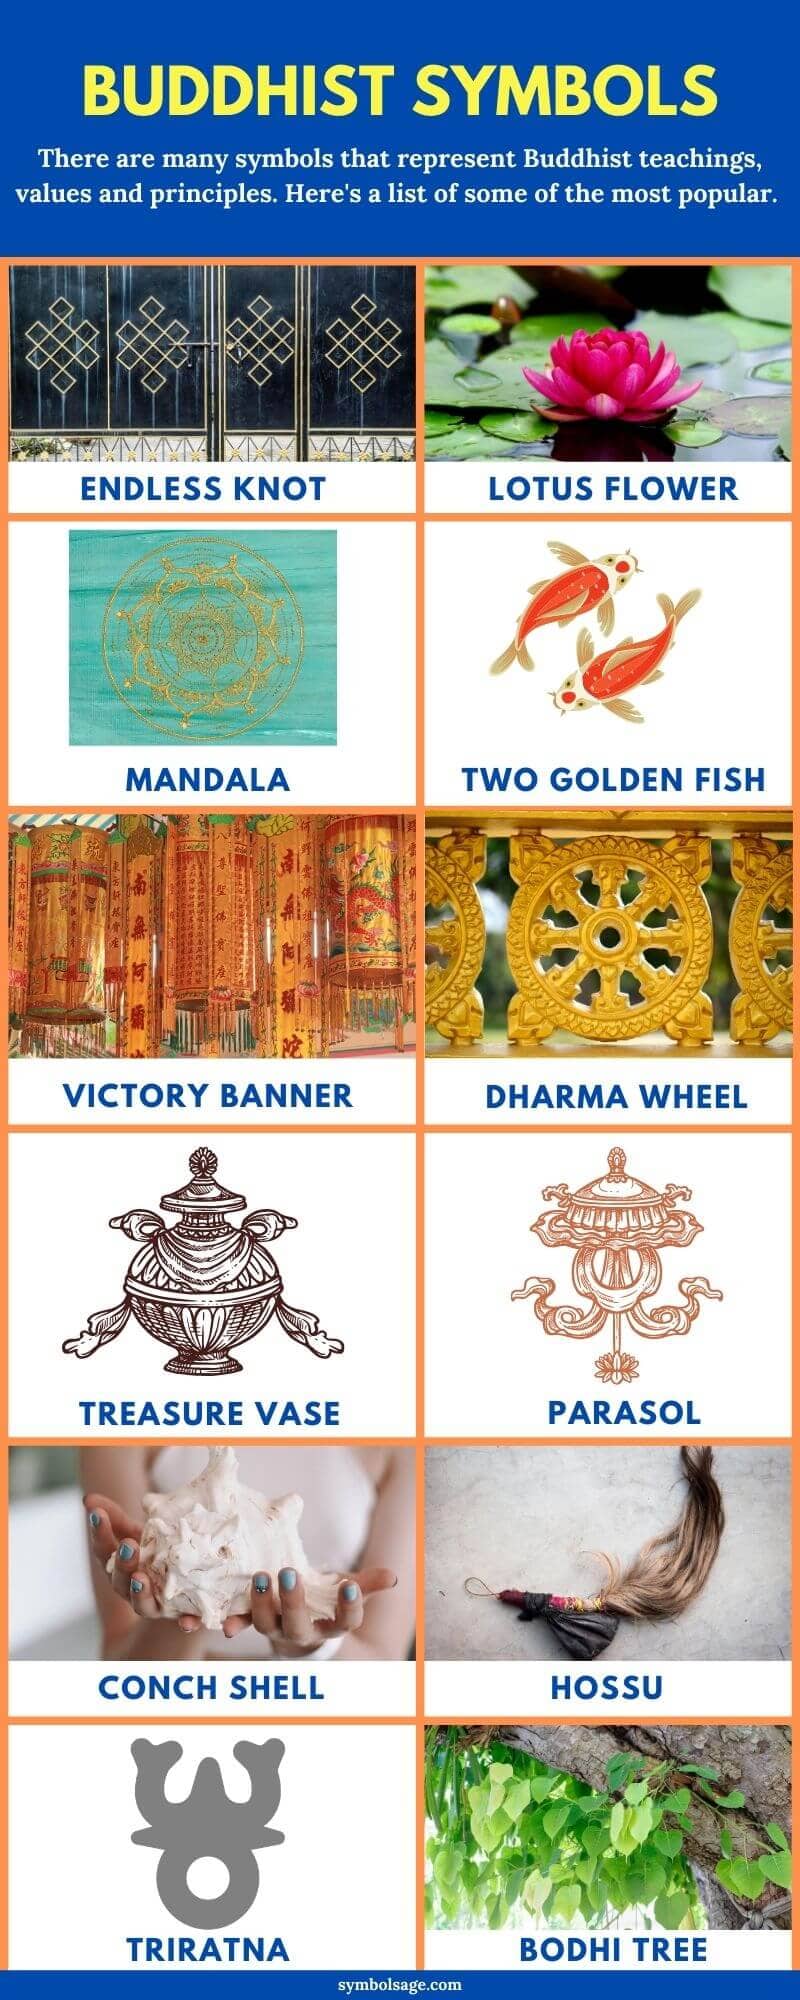 List of Buddhist symbols